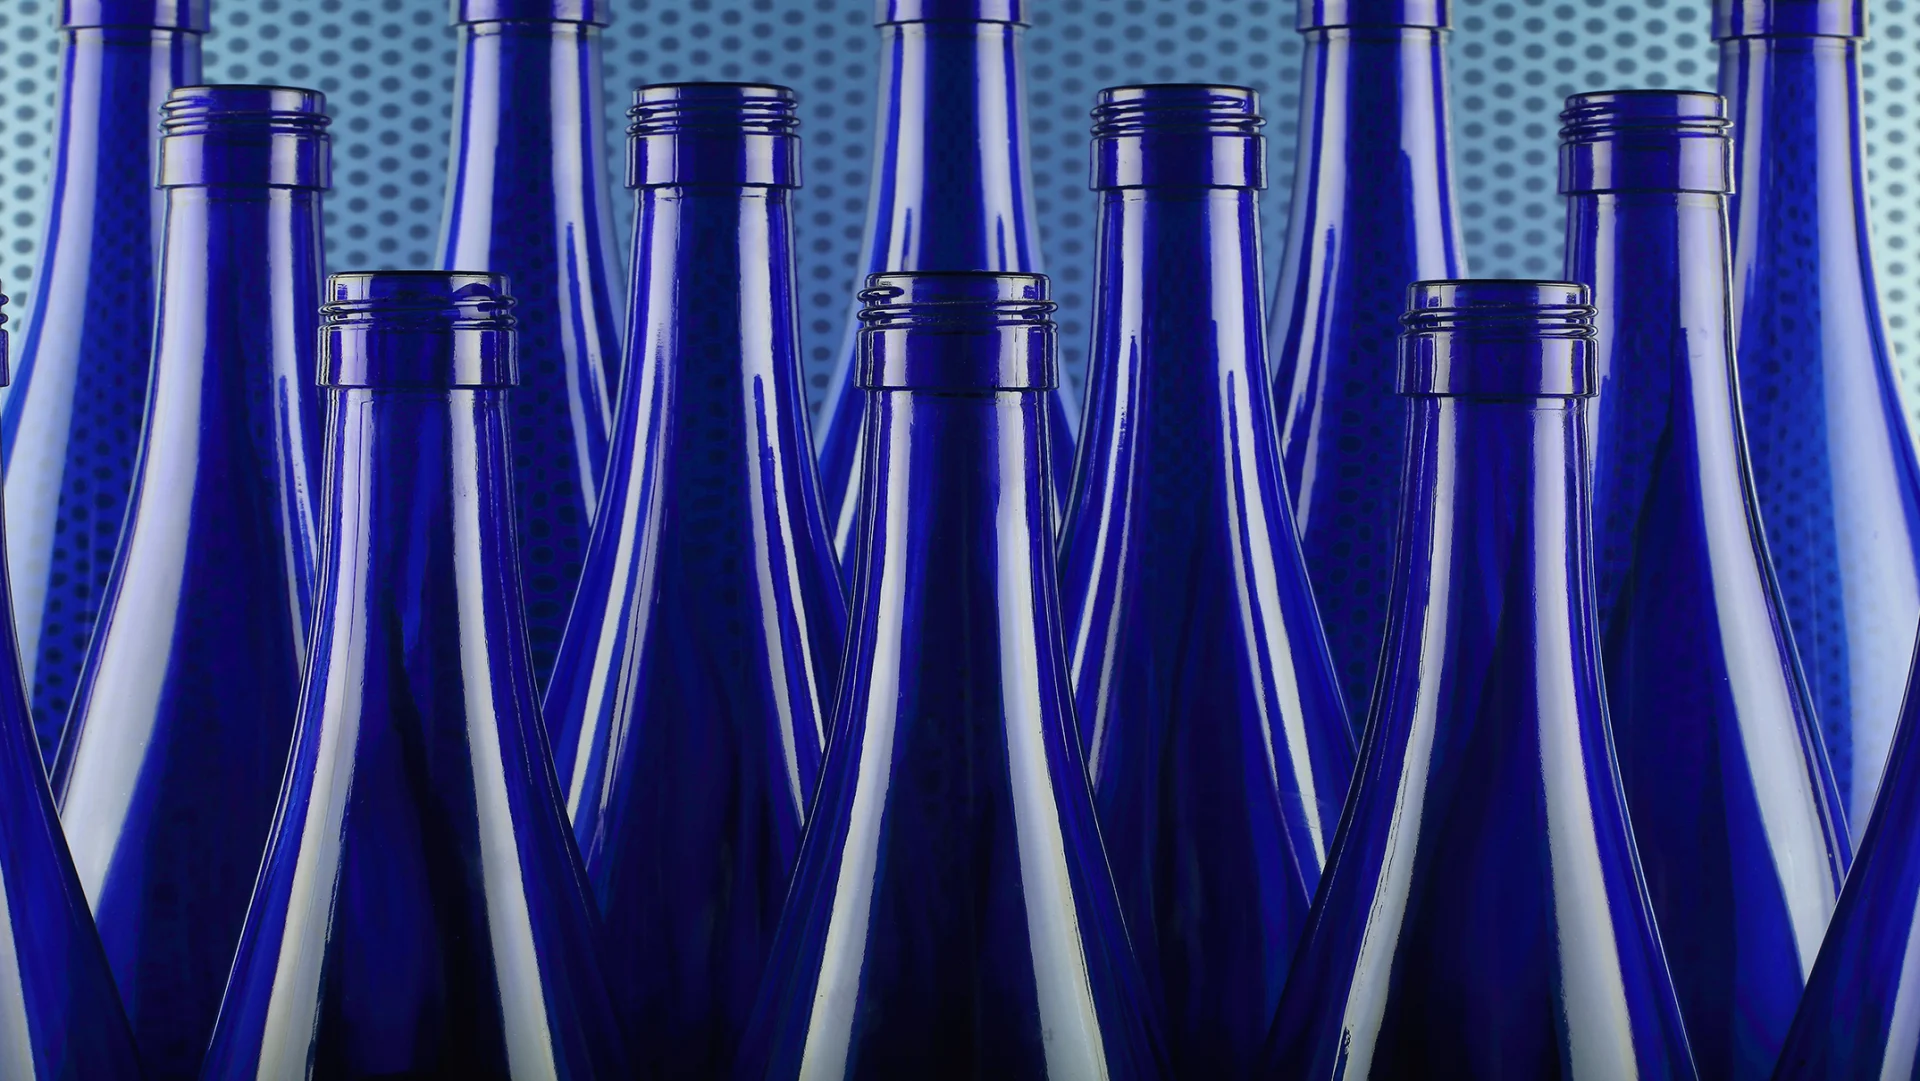 Bottiglie di vetro blu una accanto all'altra